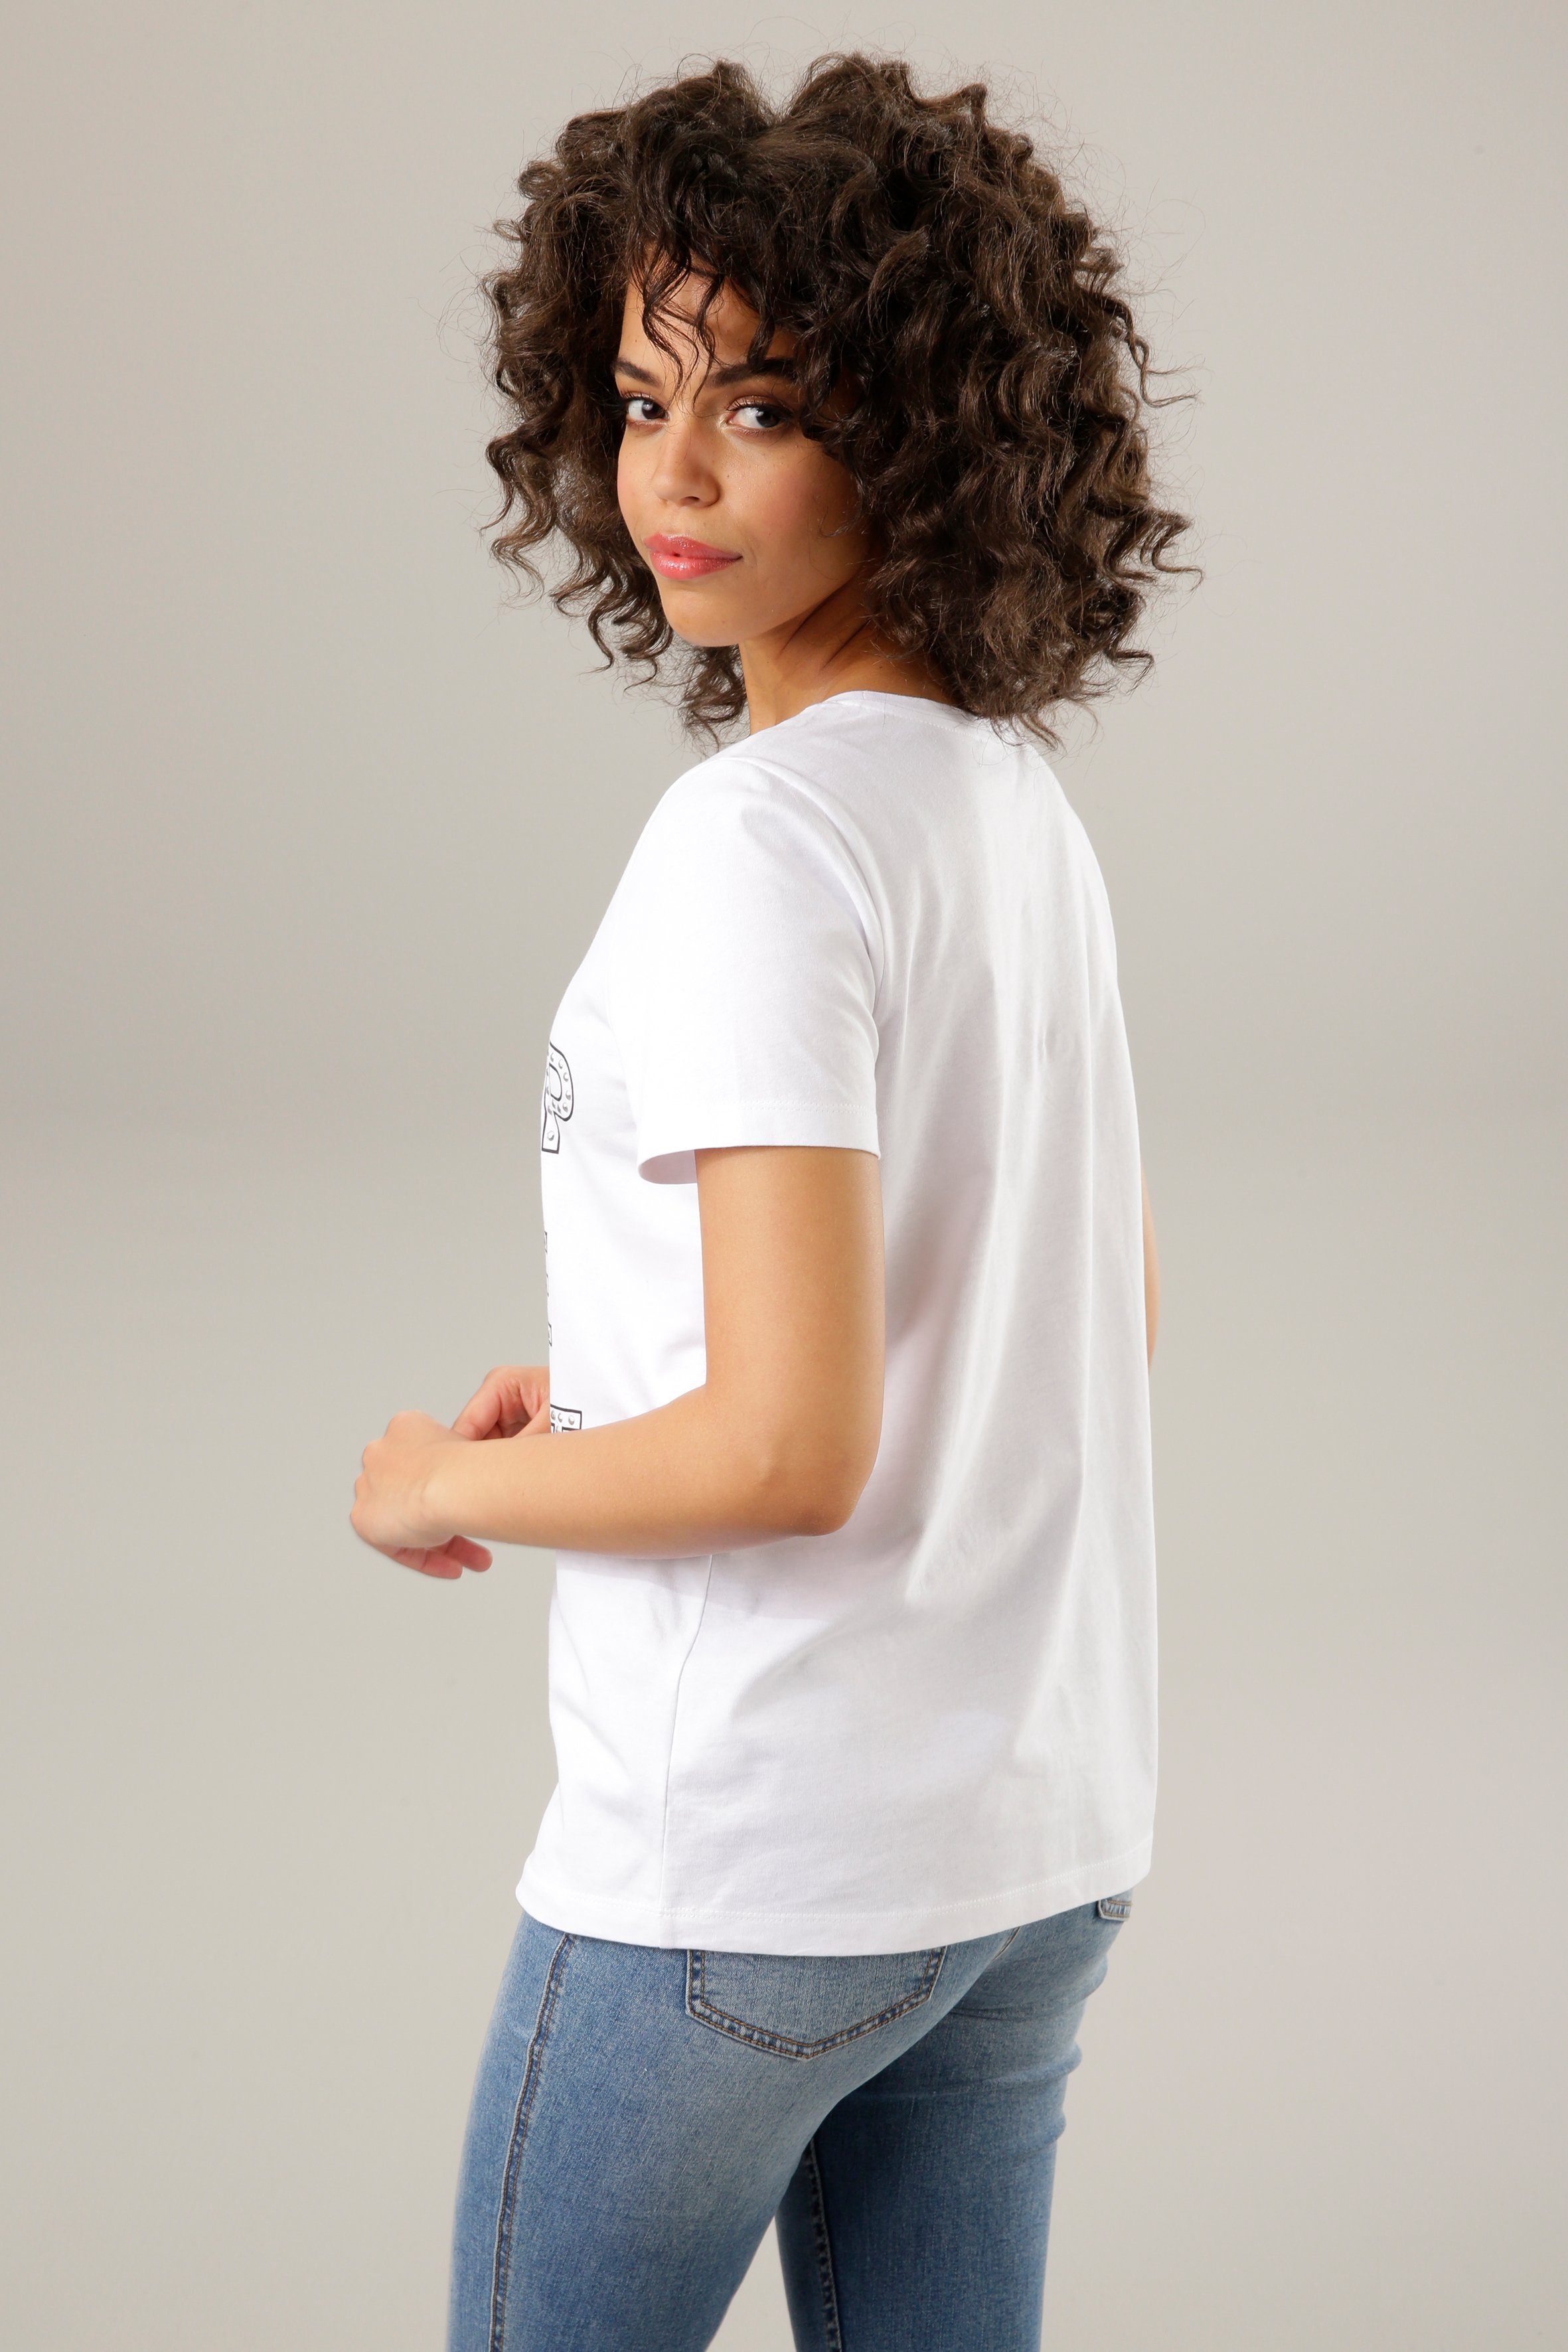 Print-Shirt mit Schriftzug bunten Glitzerstreifen, Nieten Aniston und CASUAL